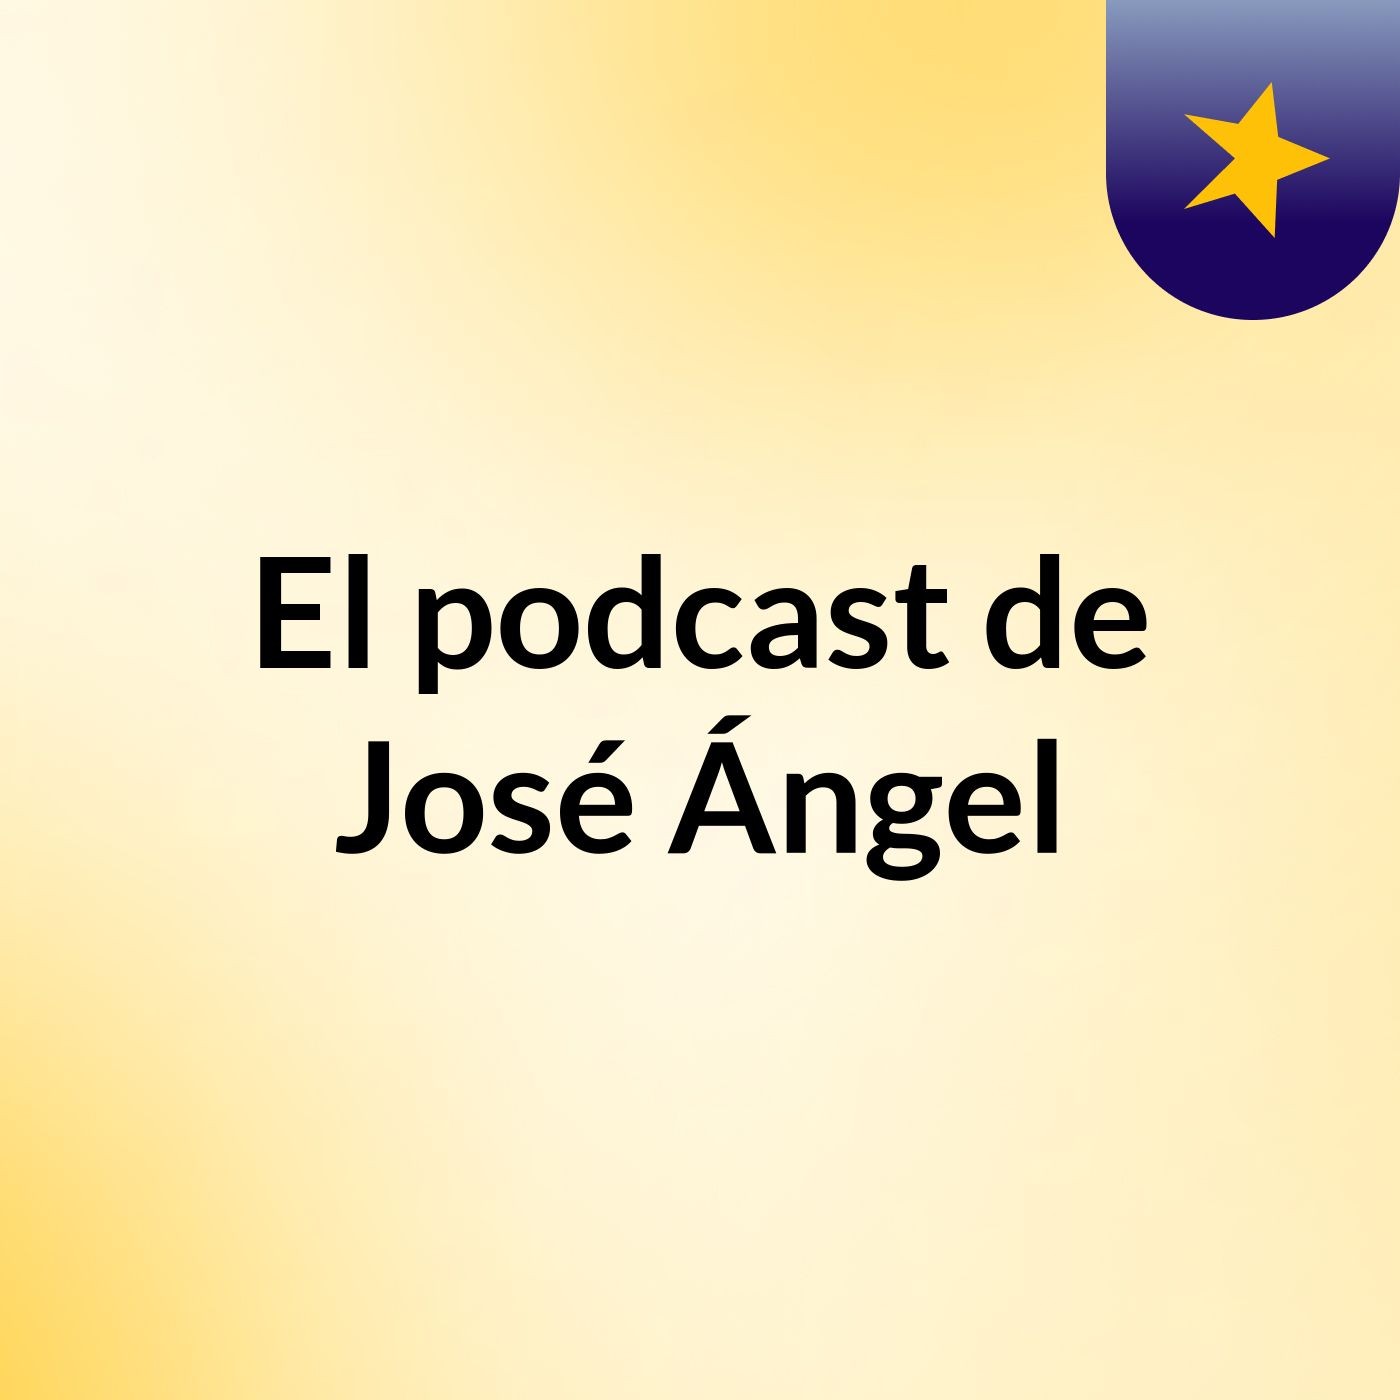 El podcast de José Ángel